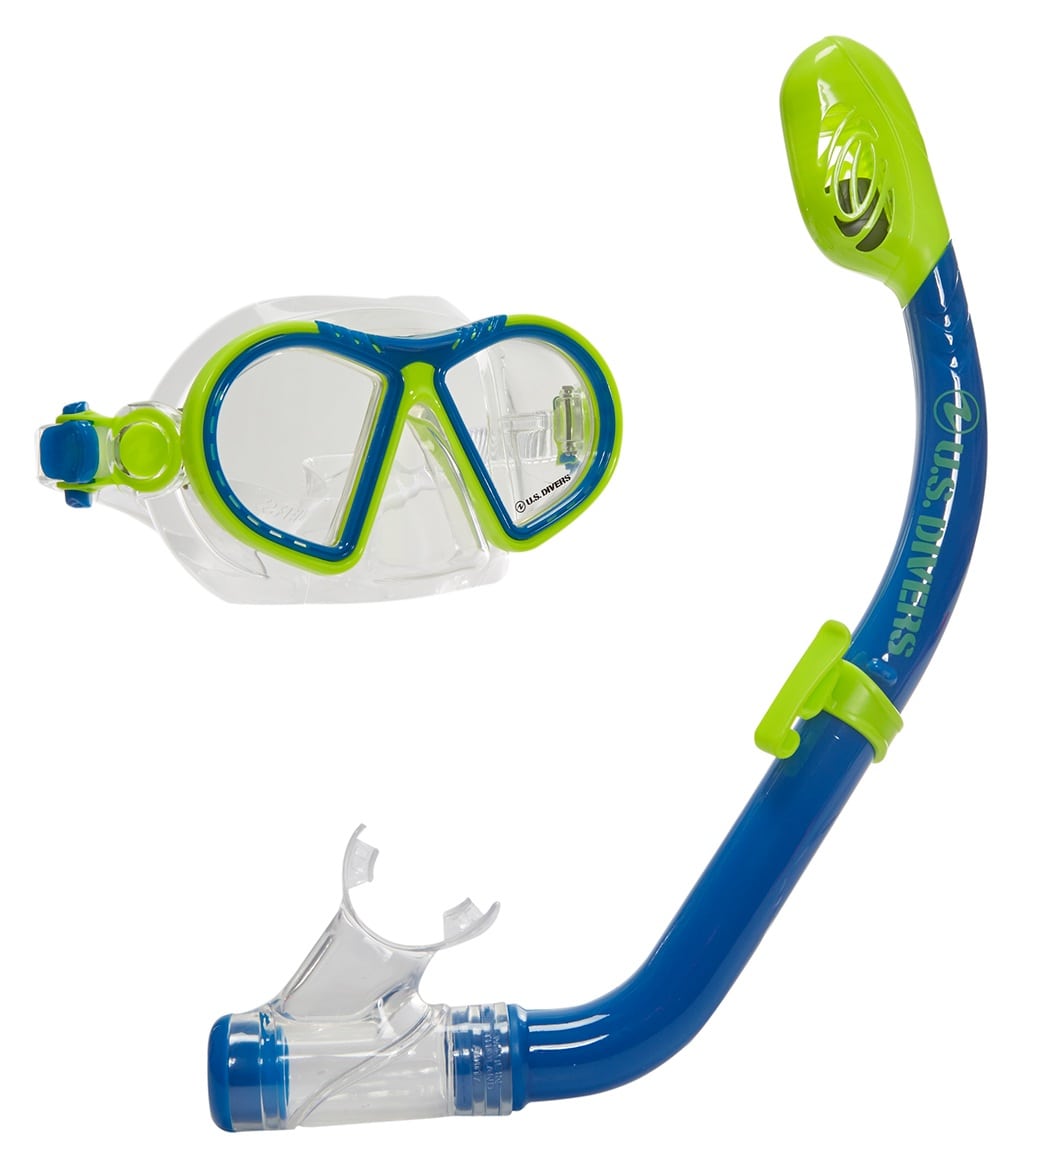 U.s. Divers Toucan Pc Jr / Keiki Dx Snorkel Set Ages 6+ - Bright Yellow/Blue - Swimoutlet.com